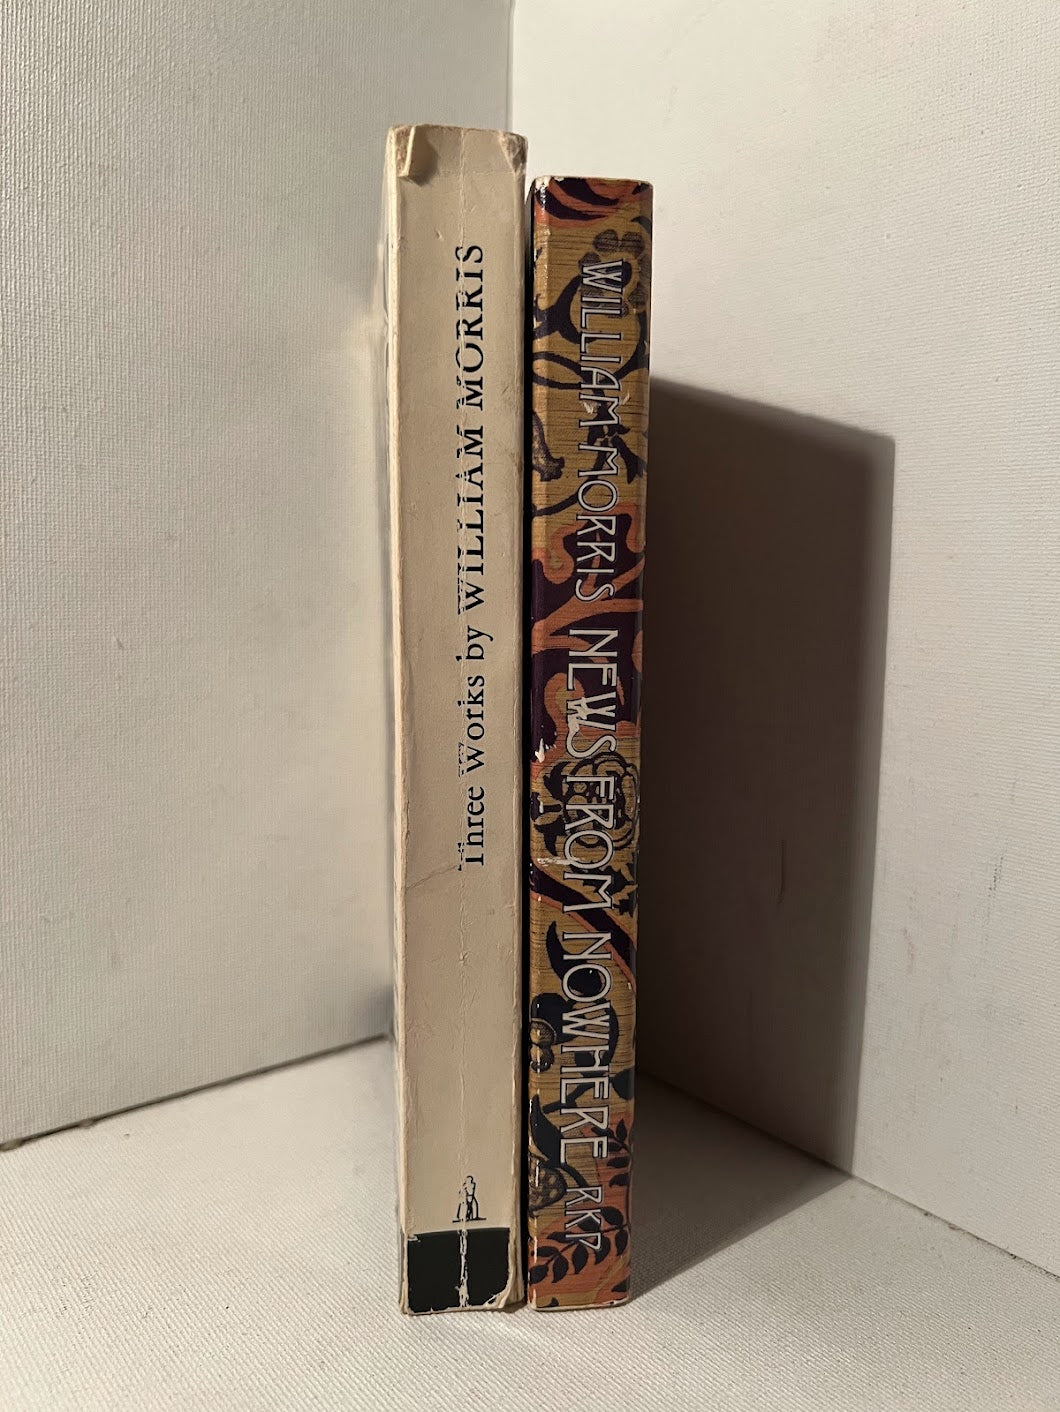 2 books by William Morris